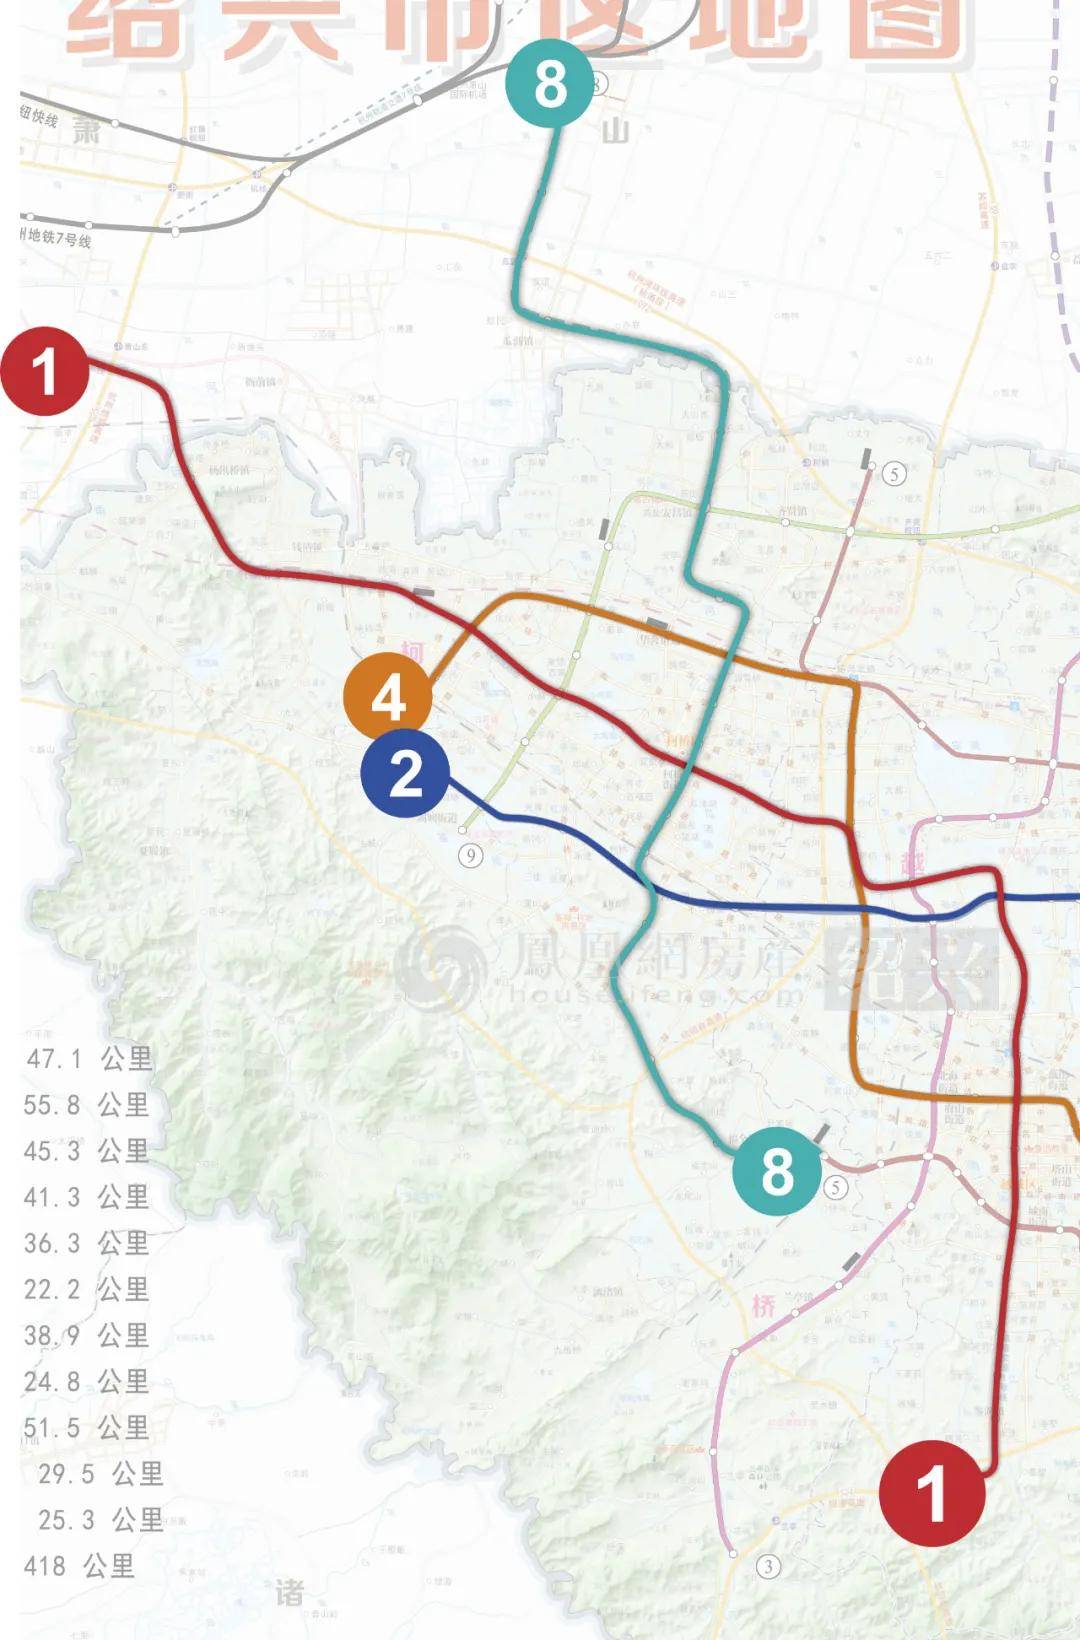 大家最关注的地铁方面, 到2035年,柯桥将拥有4条地铁线,分别为1,2,4,8